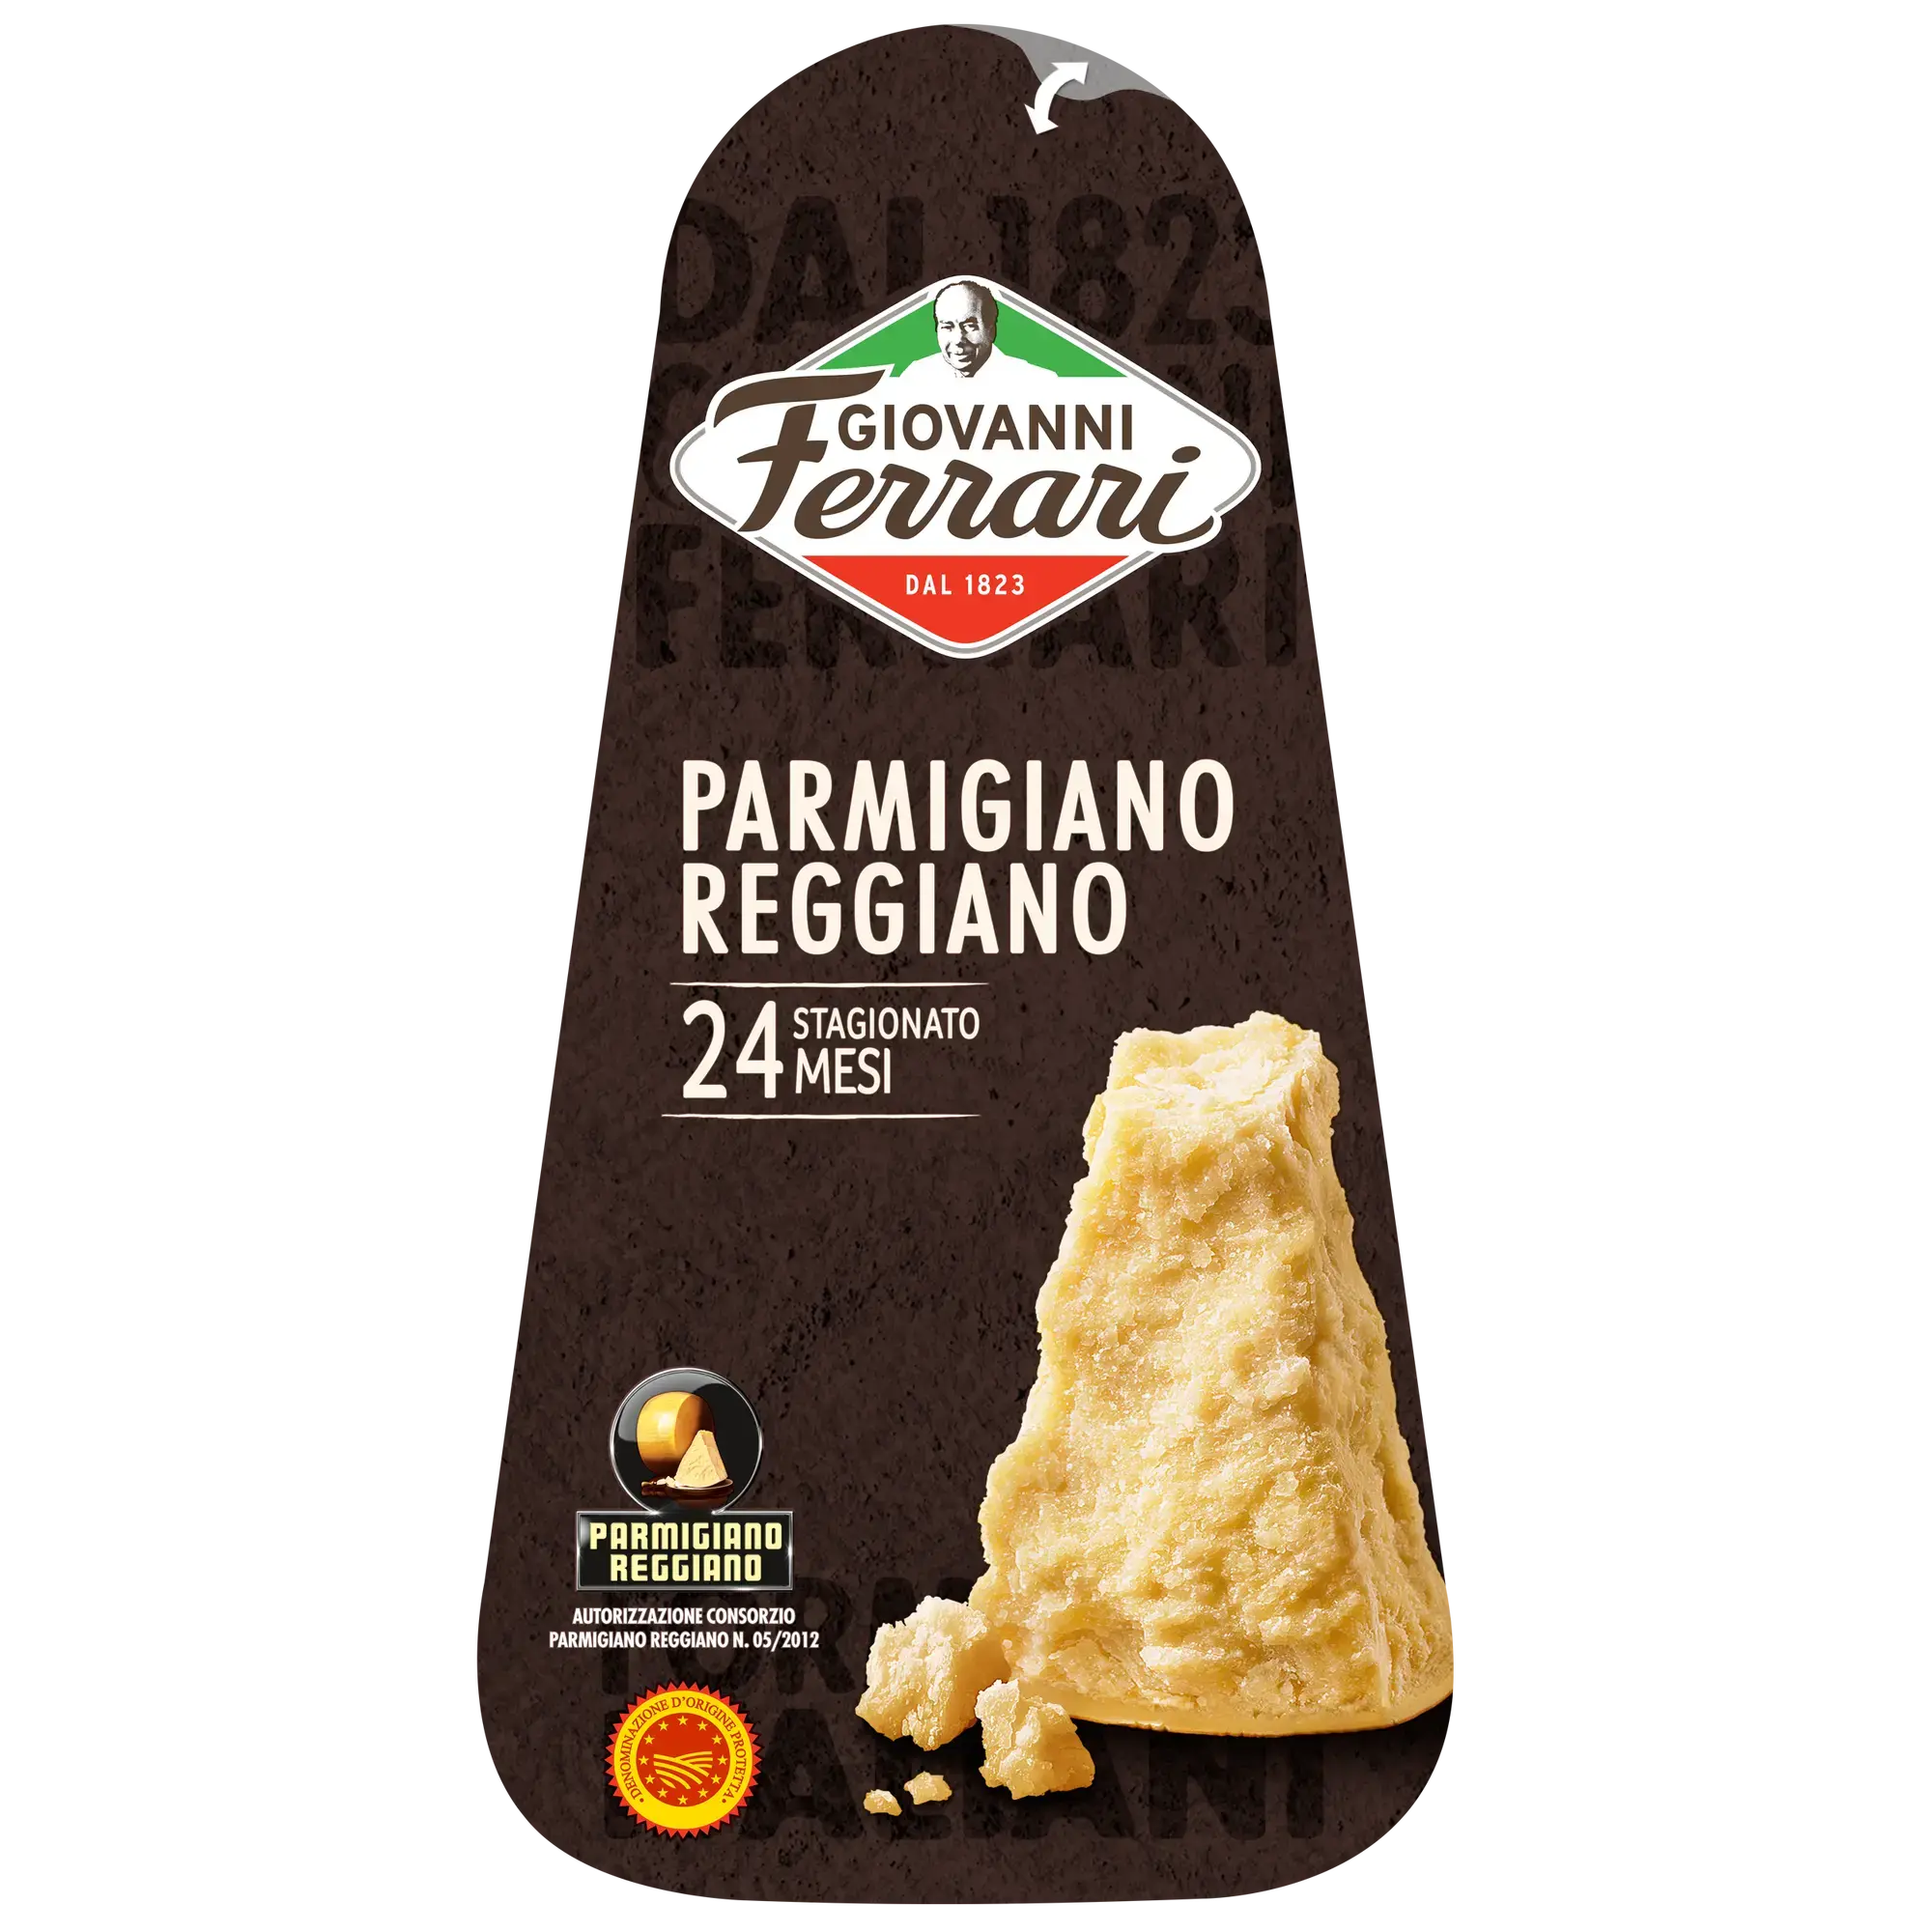 Le parmesan ou parmigiano reggiano - Quelles sont les origines et